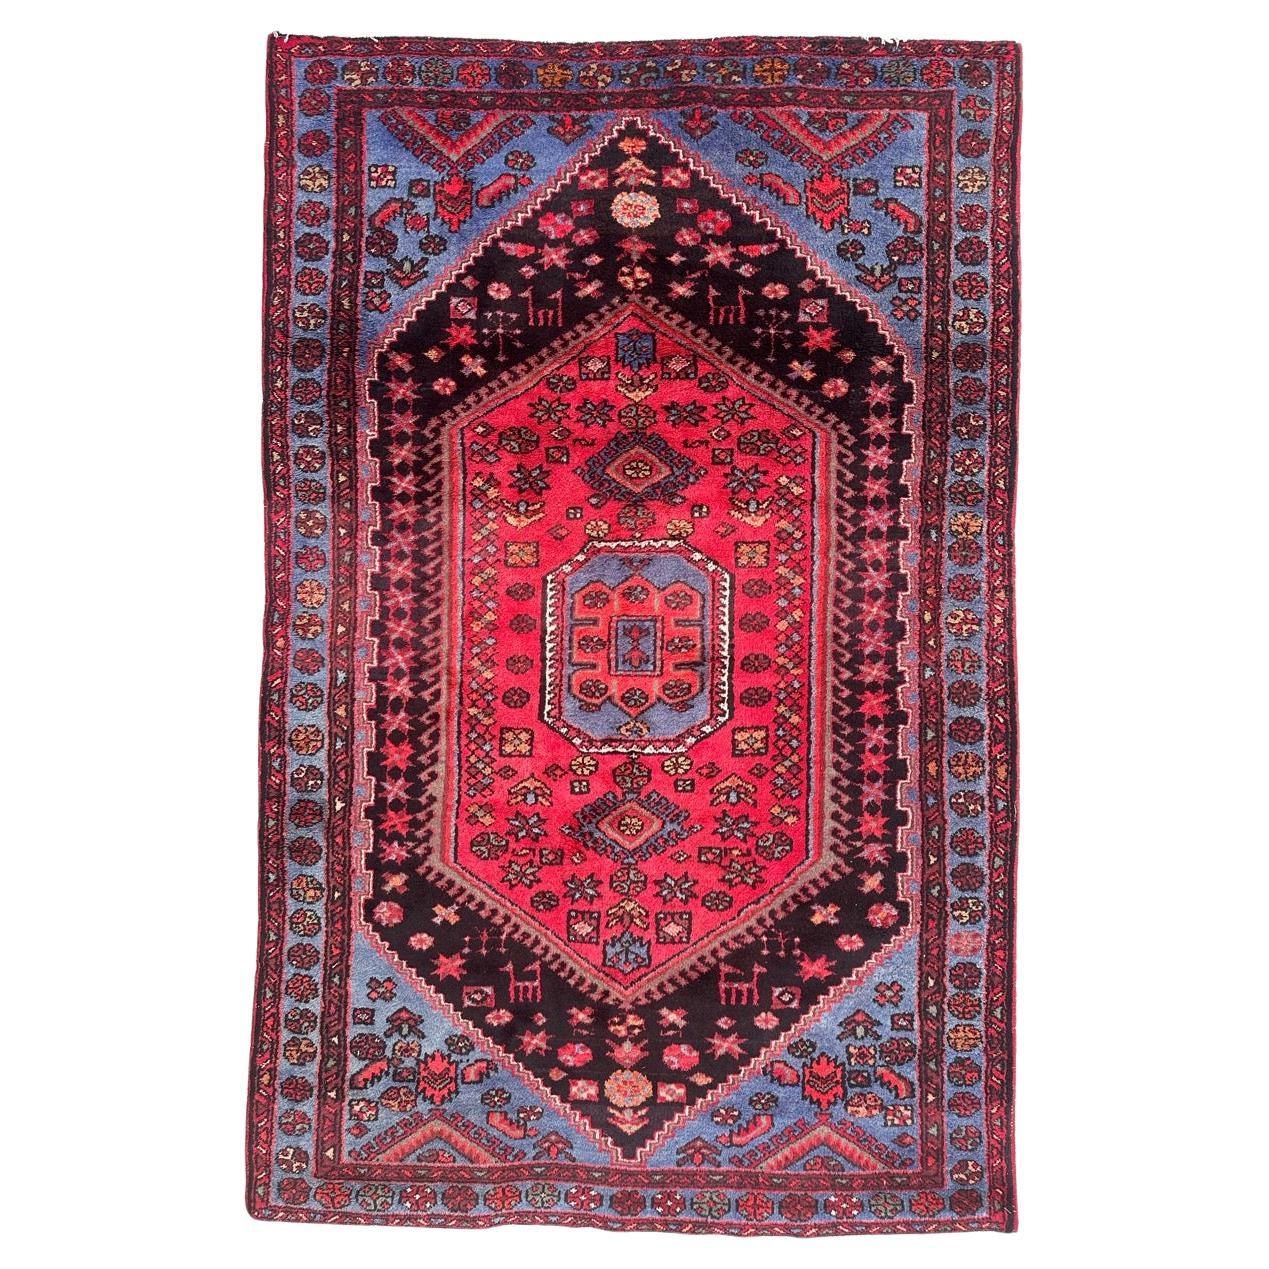 Bobyrug’s pretty vintage Hamadan rug